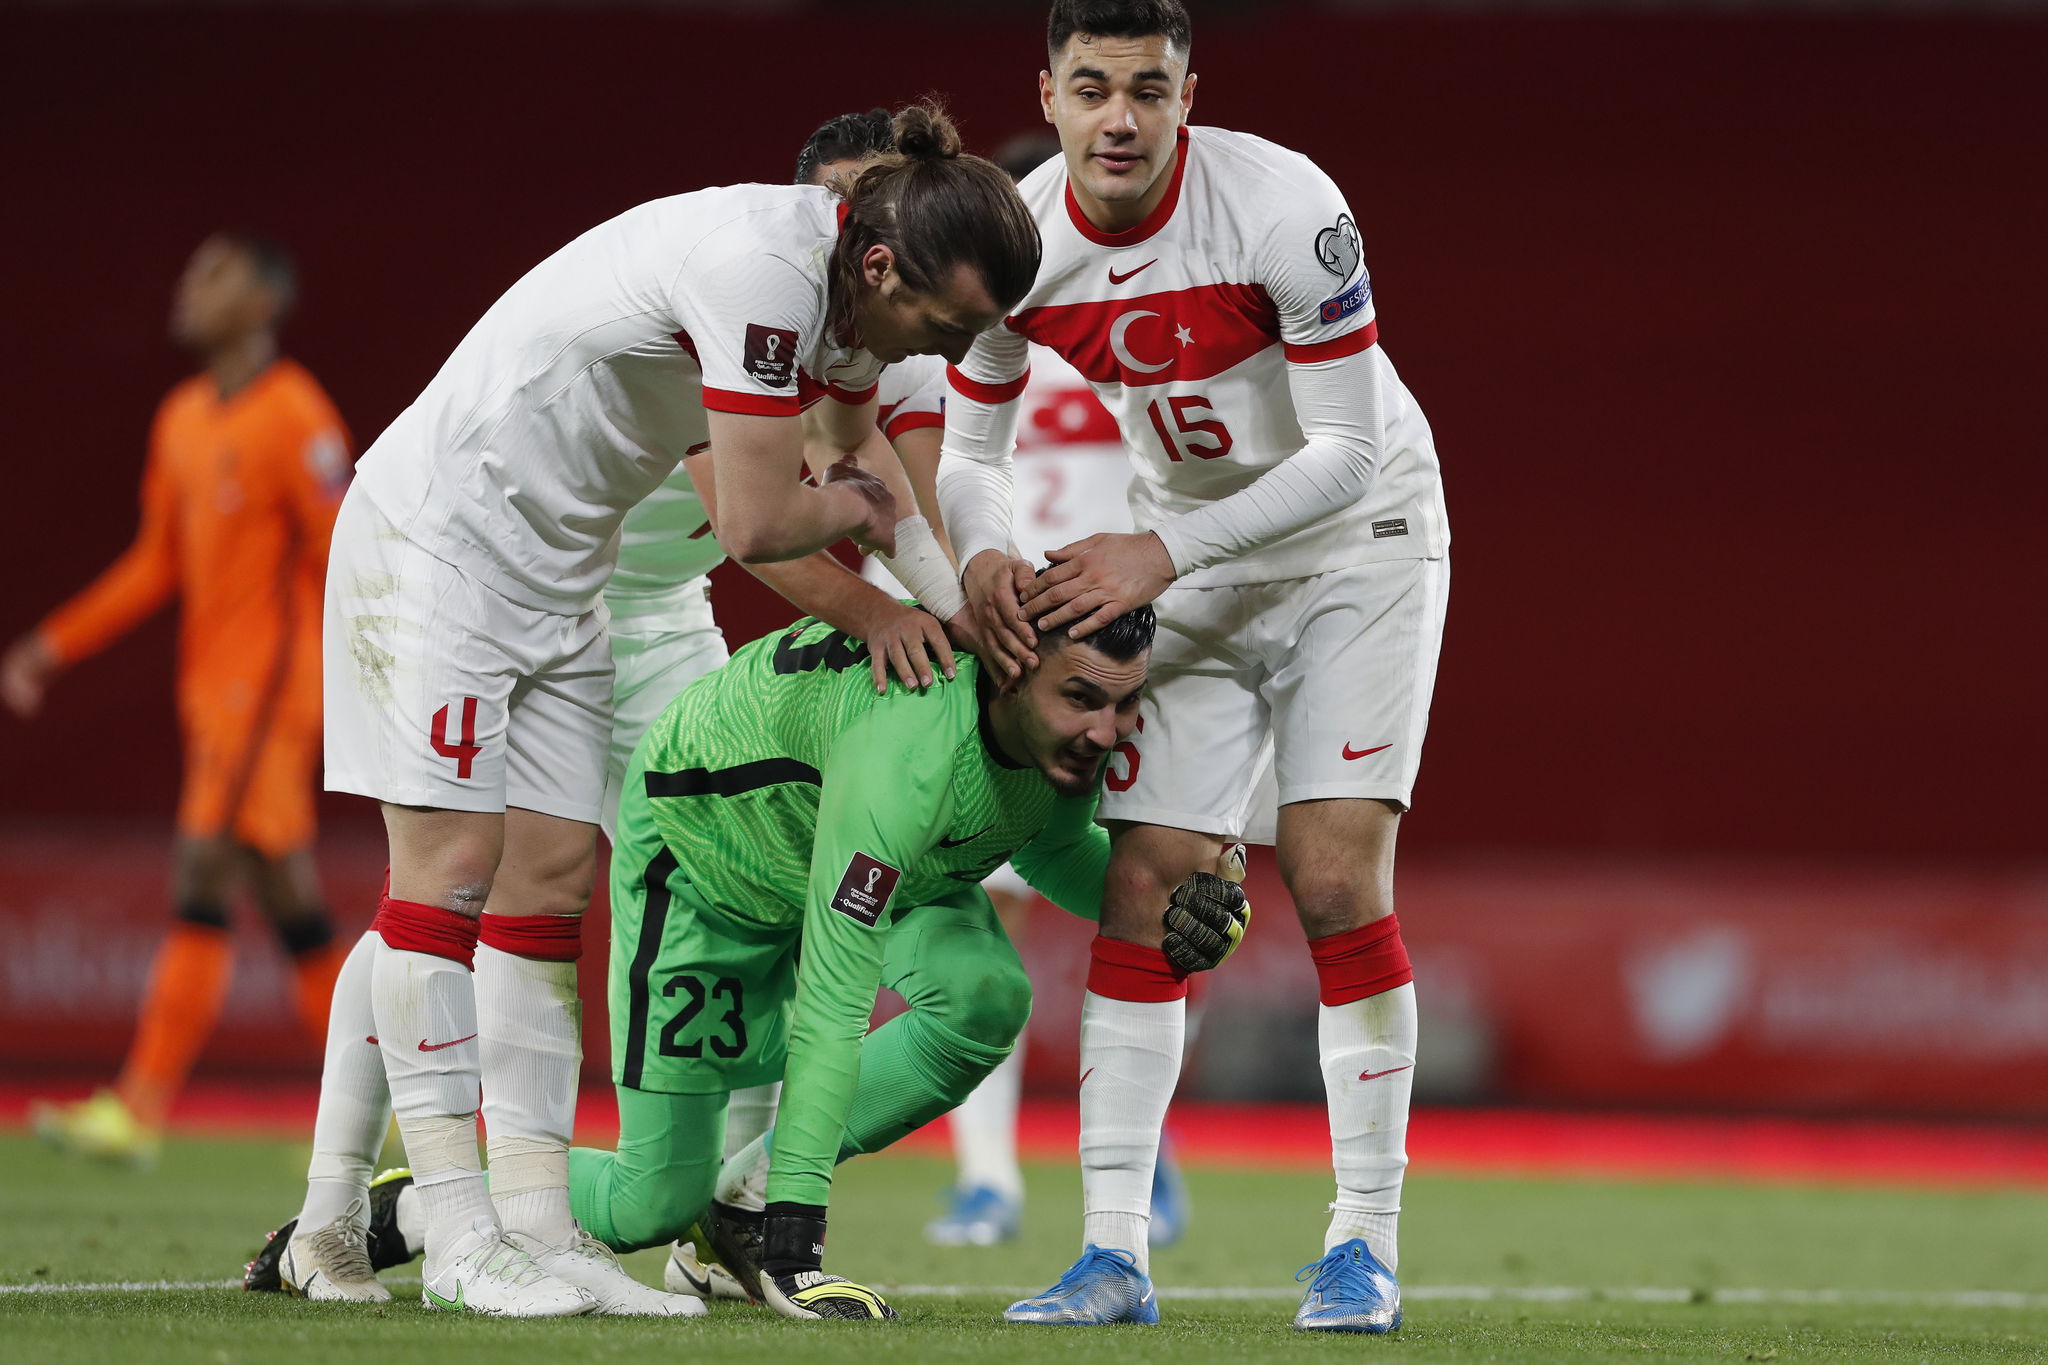 Çakir es felicitado por sus compañeros tras pararle el penalti a Depay (Holanda).